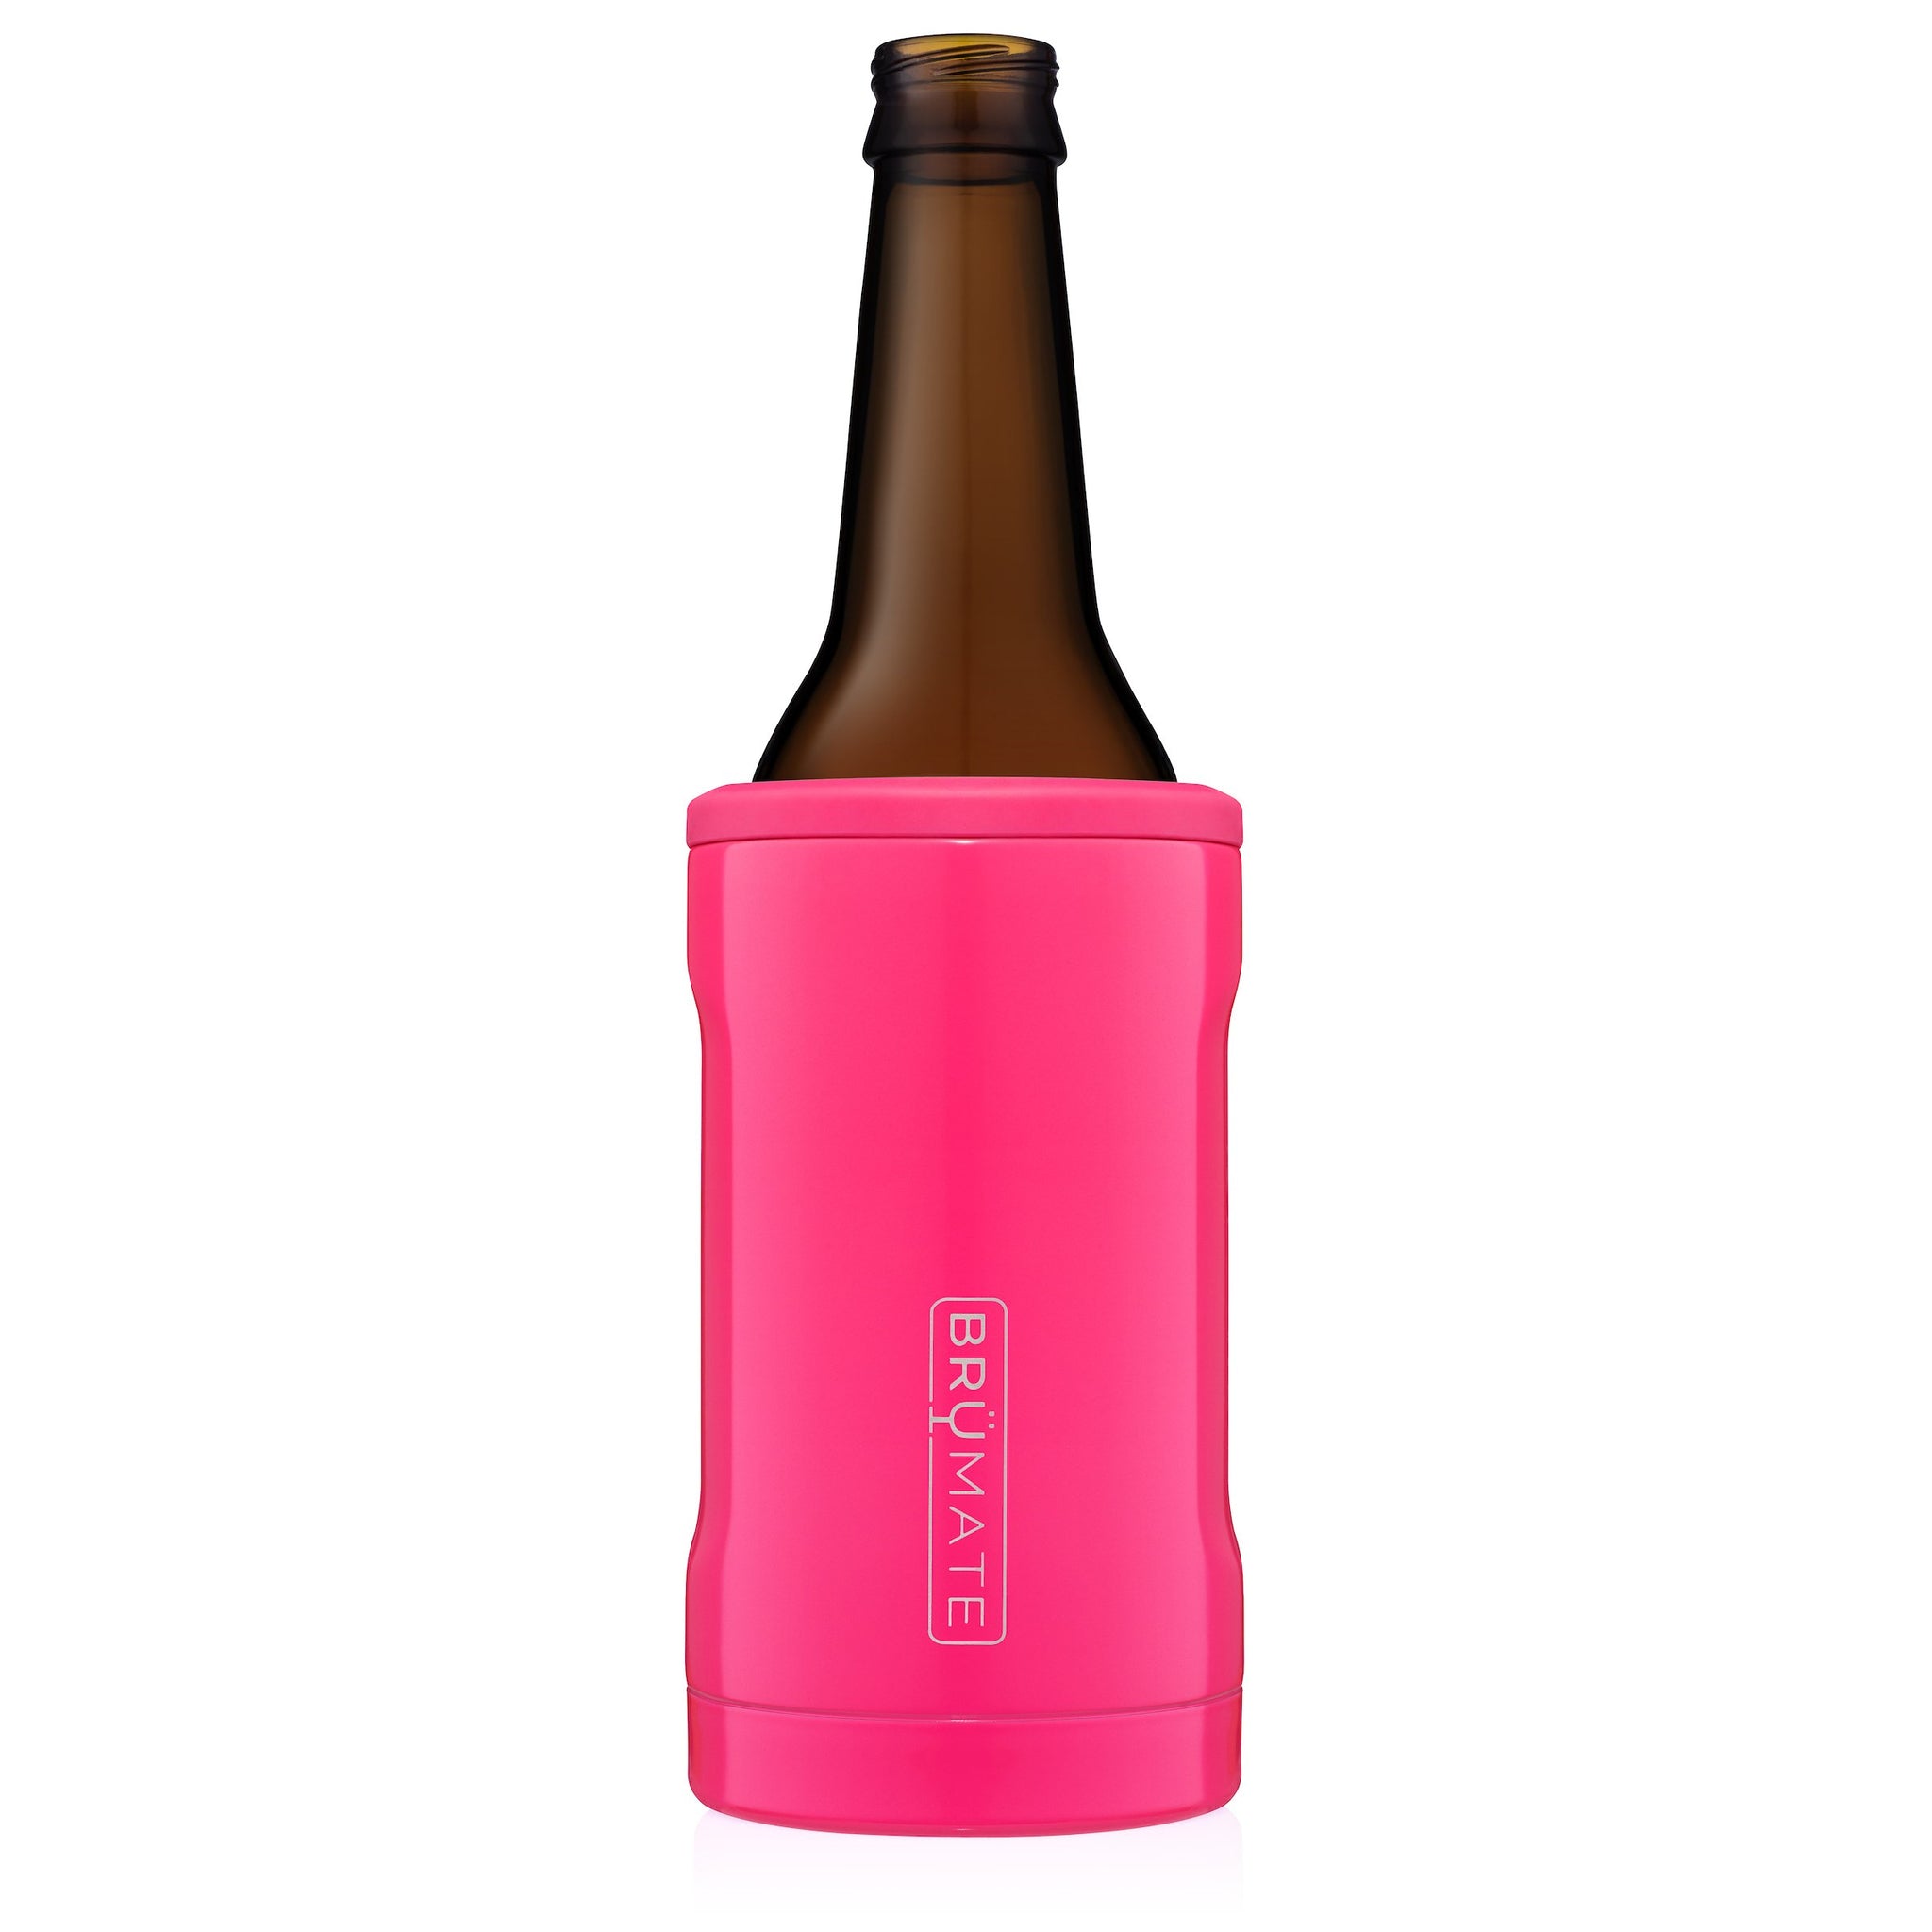 Hopsulator BOTT'L | Neon Pink (355ml bottles)